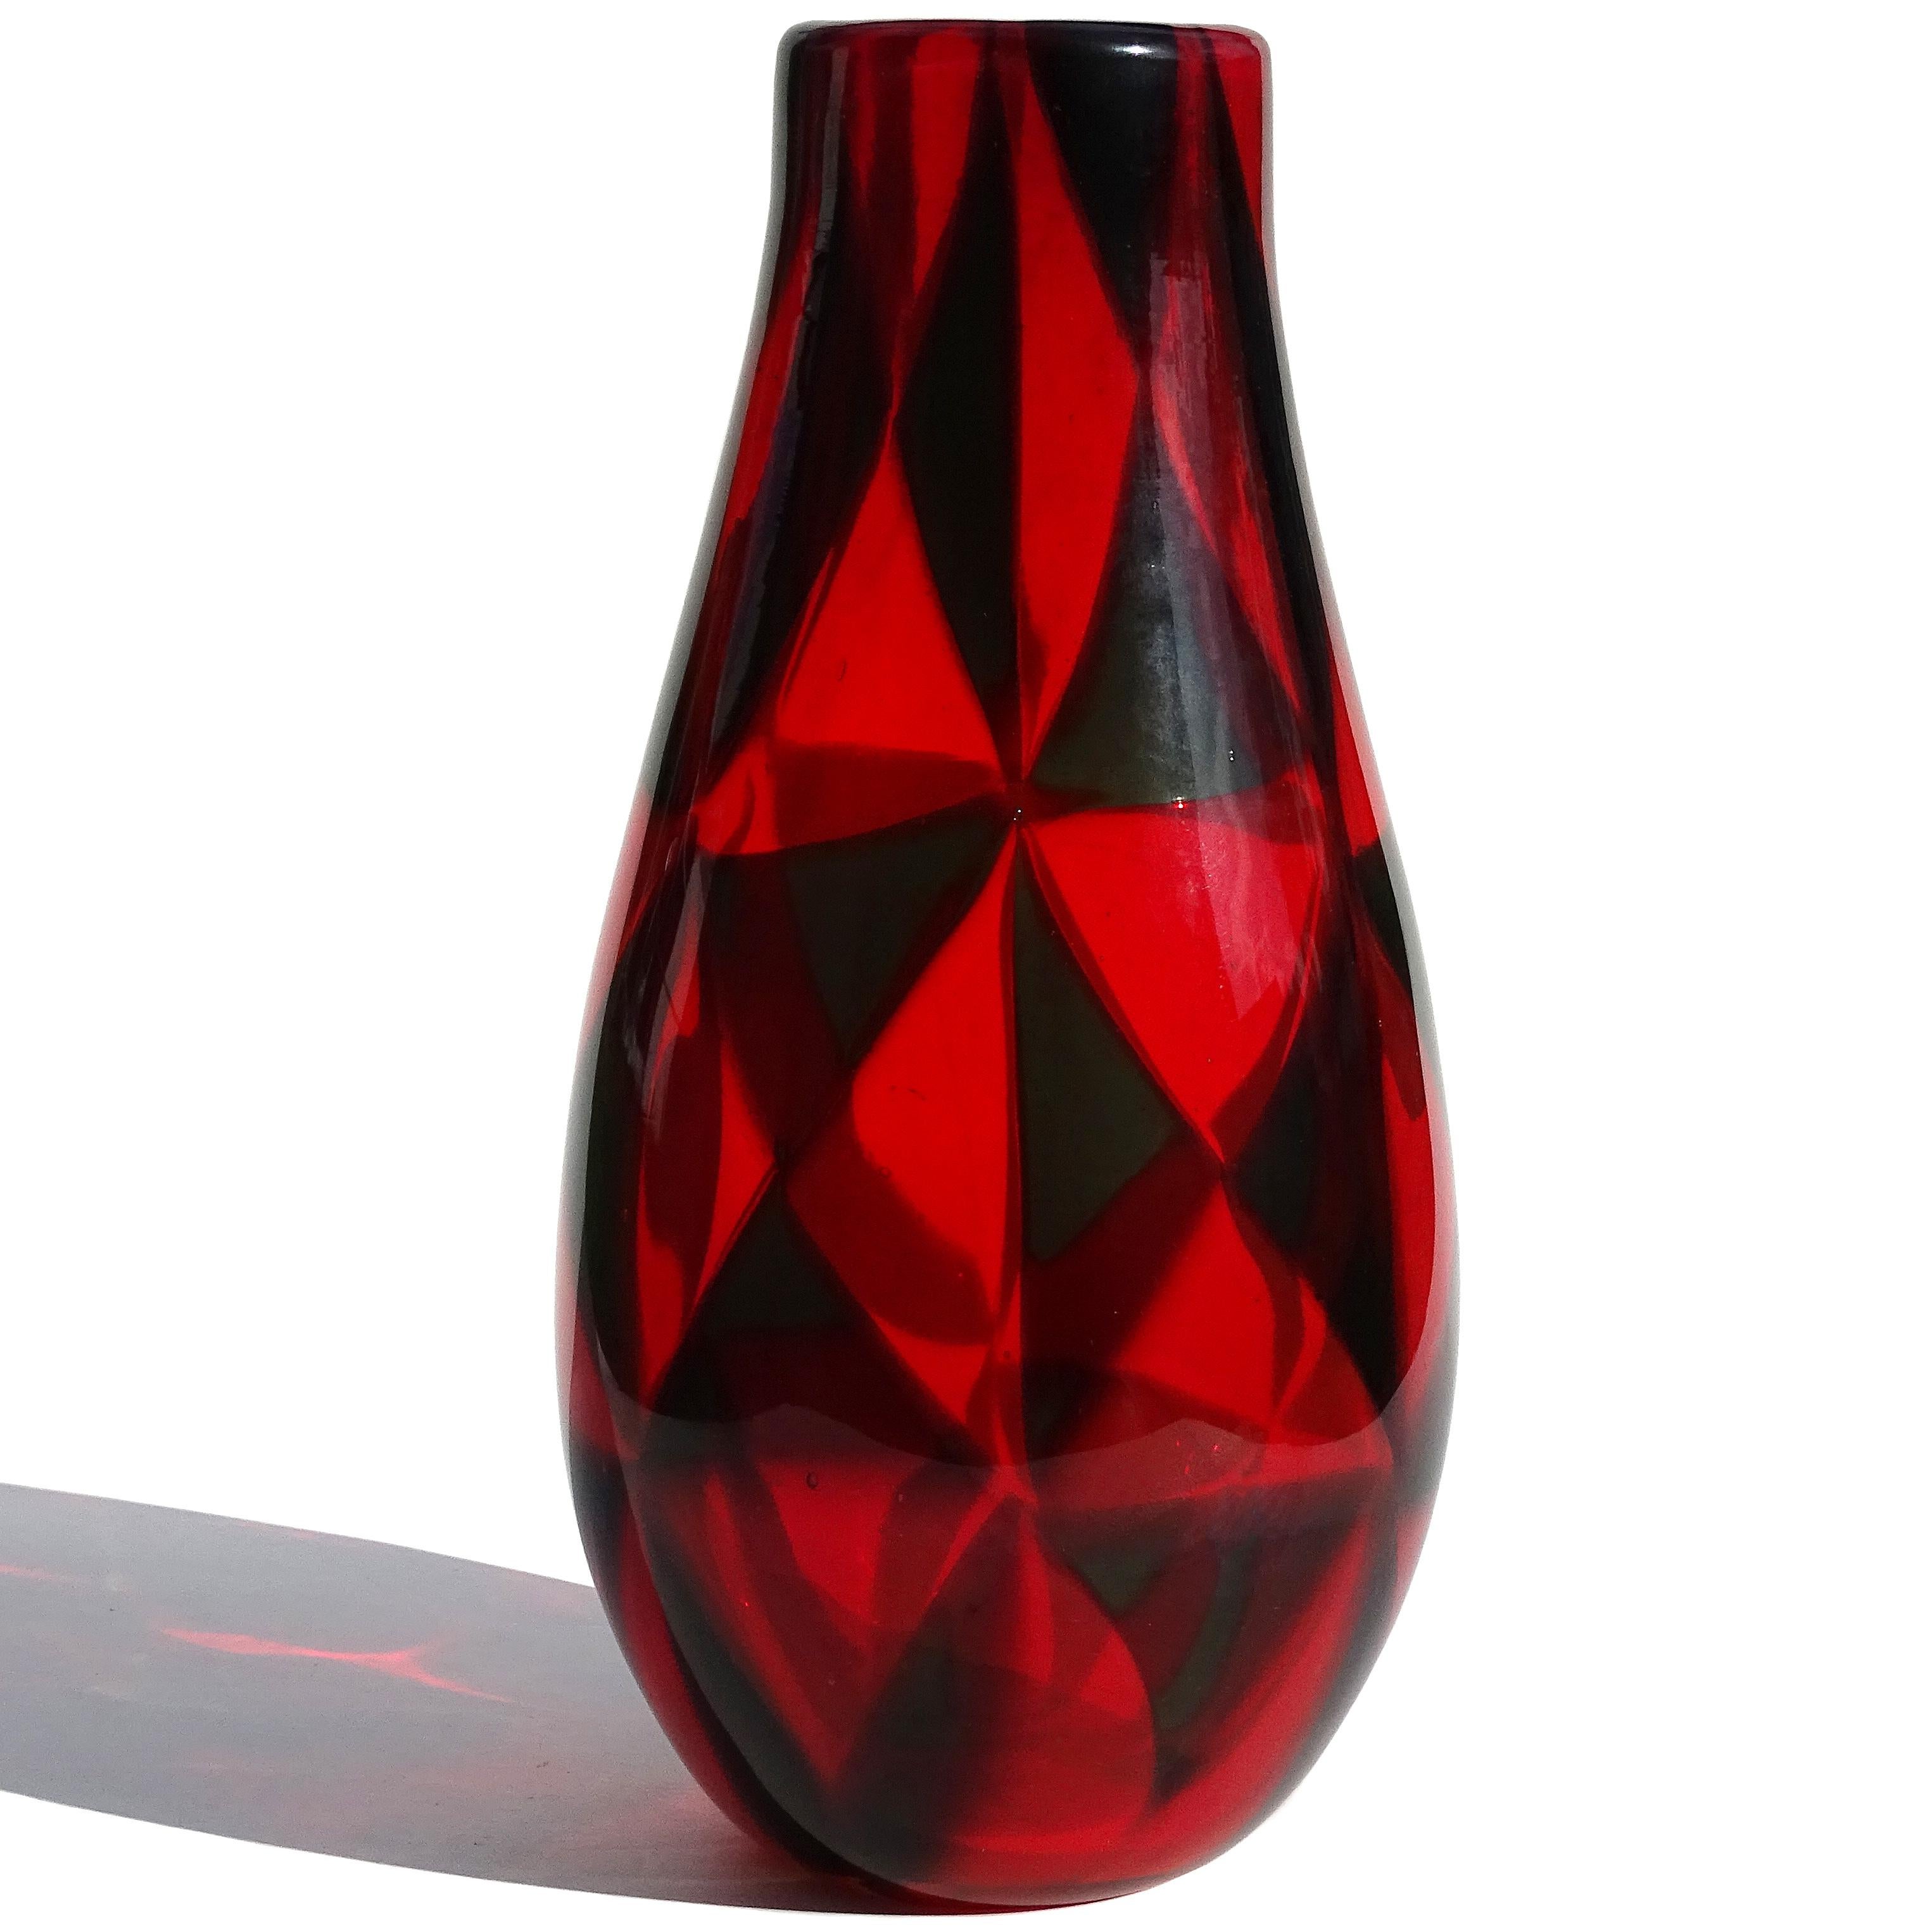 Rare et magnifique vase en verre d'art italien soufflé à la main de Murano, rouge et gris taupe, avec mosaïque en triangle Tessere. Attribué au designer Ercole Barovier, pour Barovier e Toso, vers 1961-1967. Design publié dans de nombreux ouvrages.